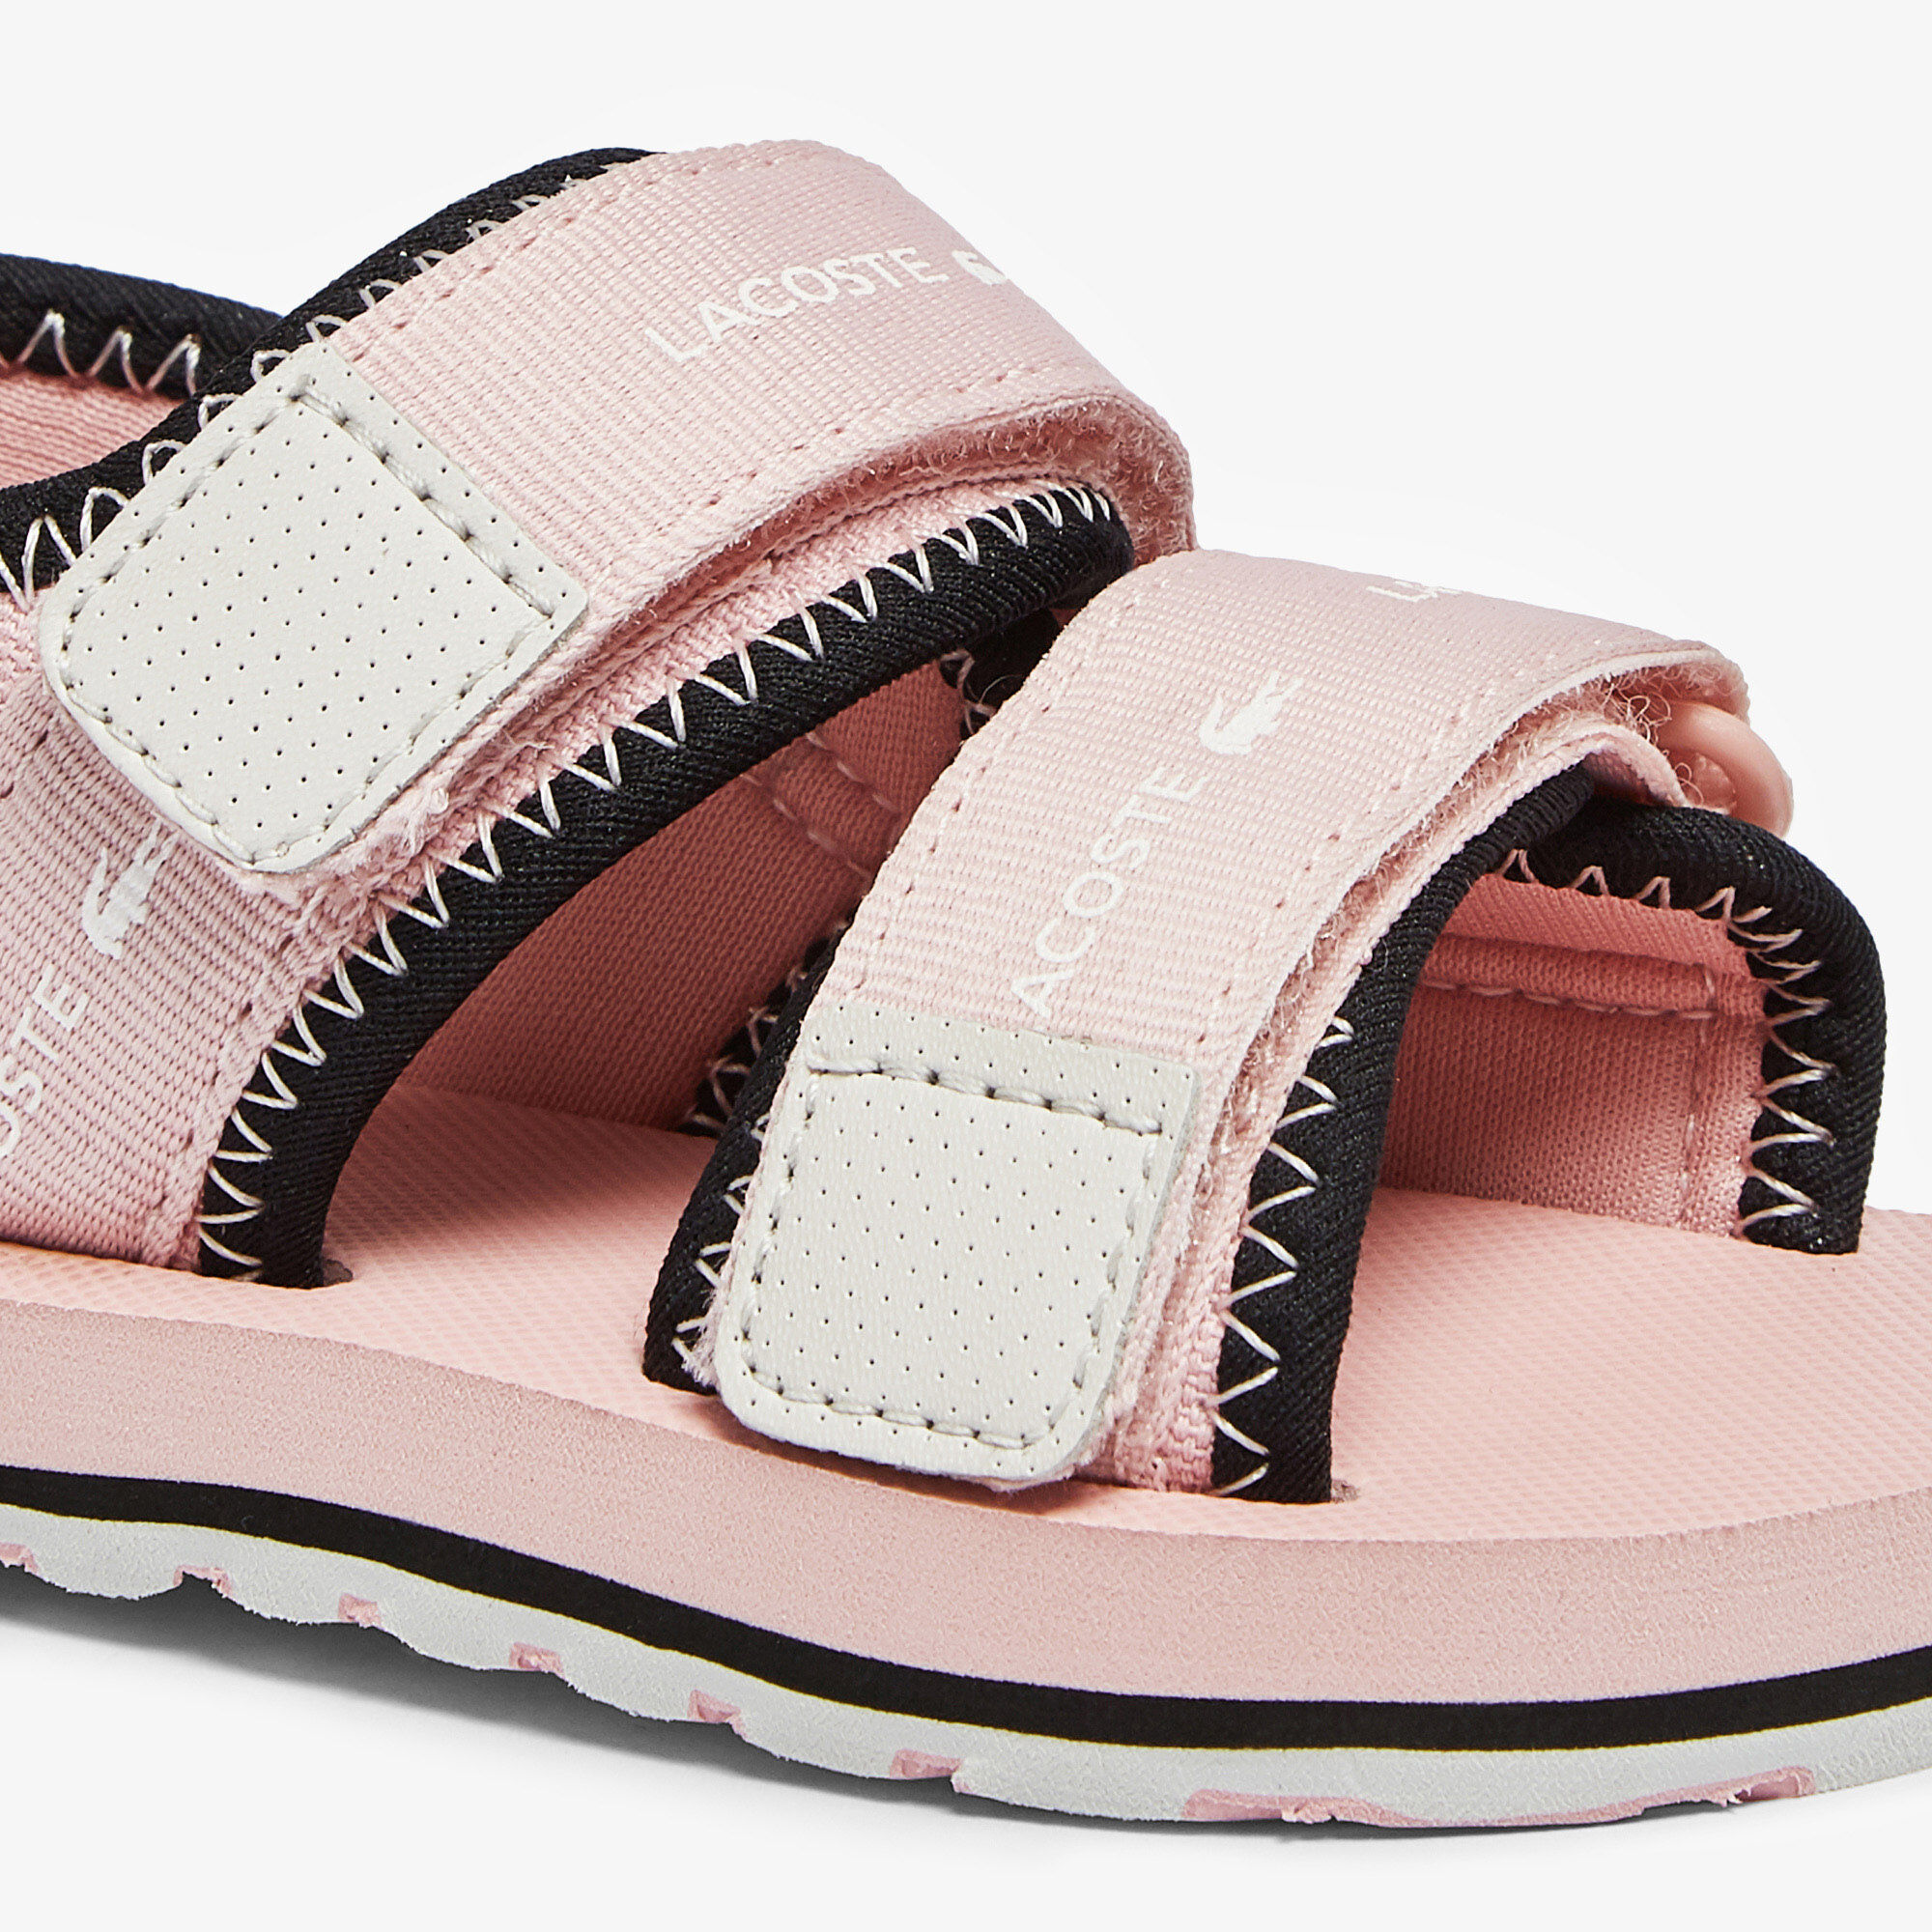 Infants' Sol Textile Sandals